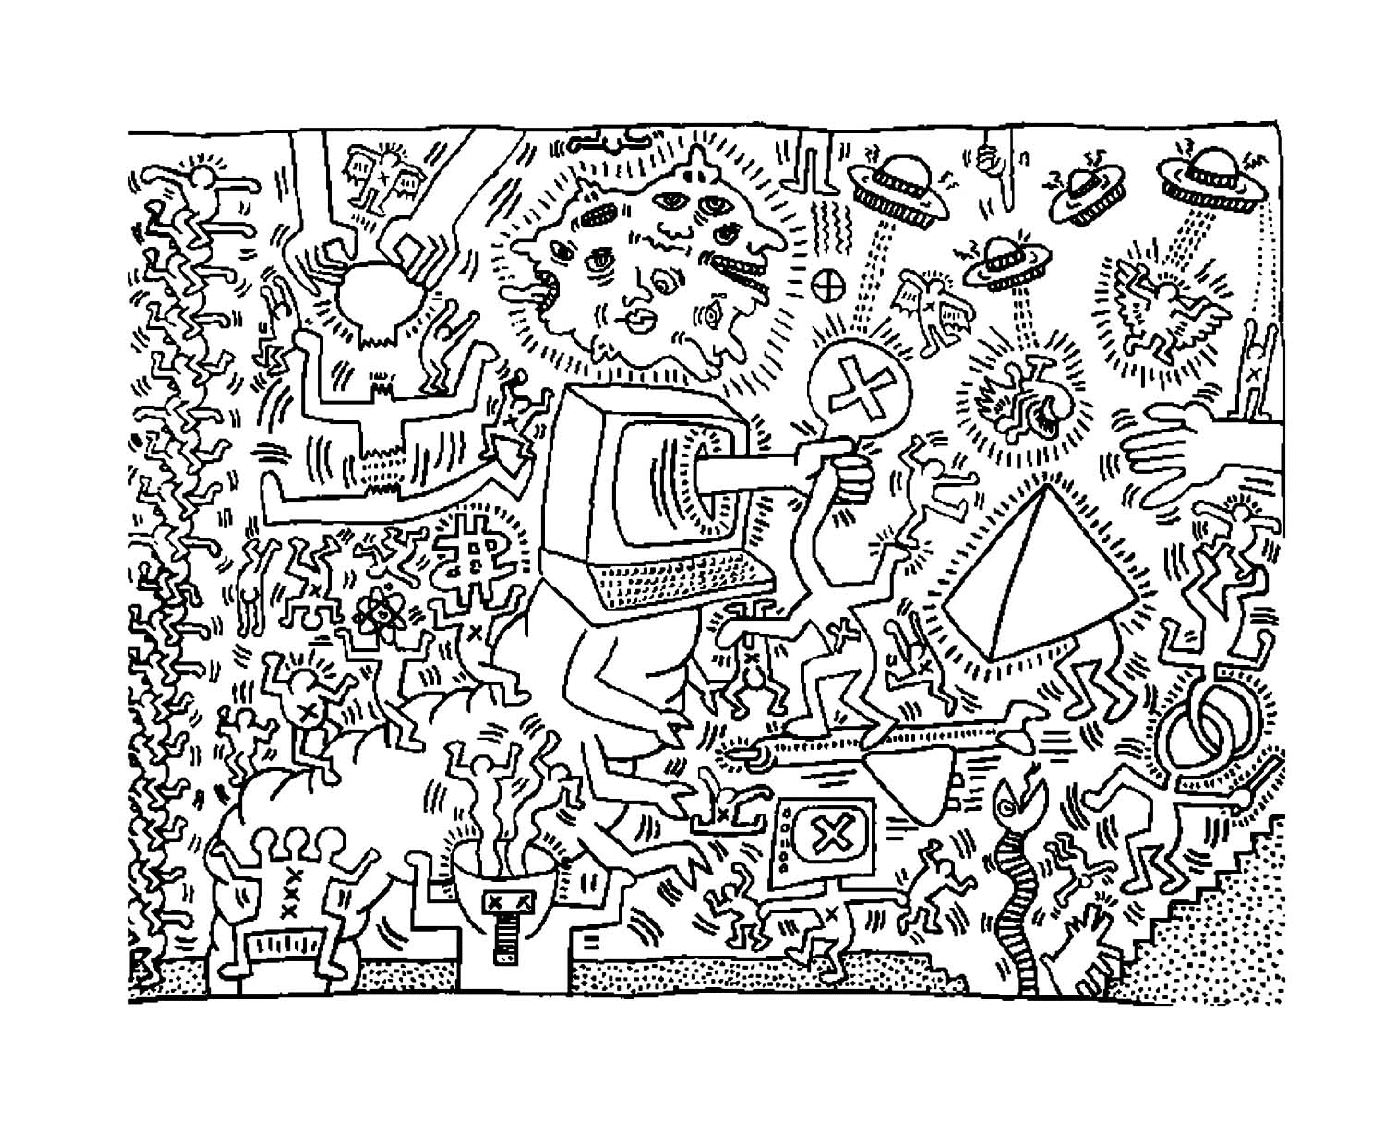  una computadora según Keith Haring 